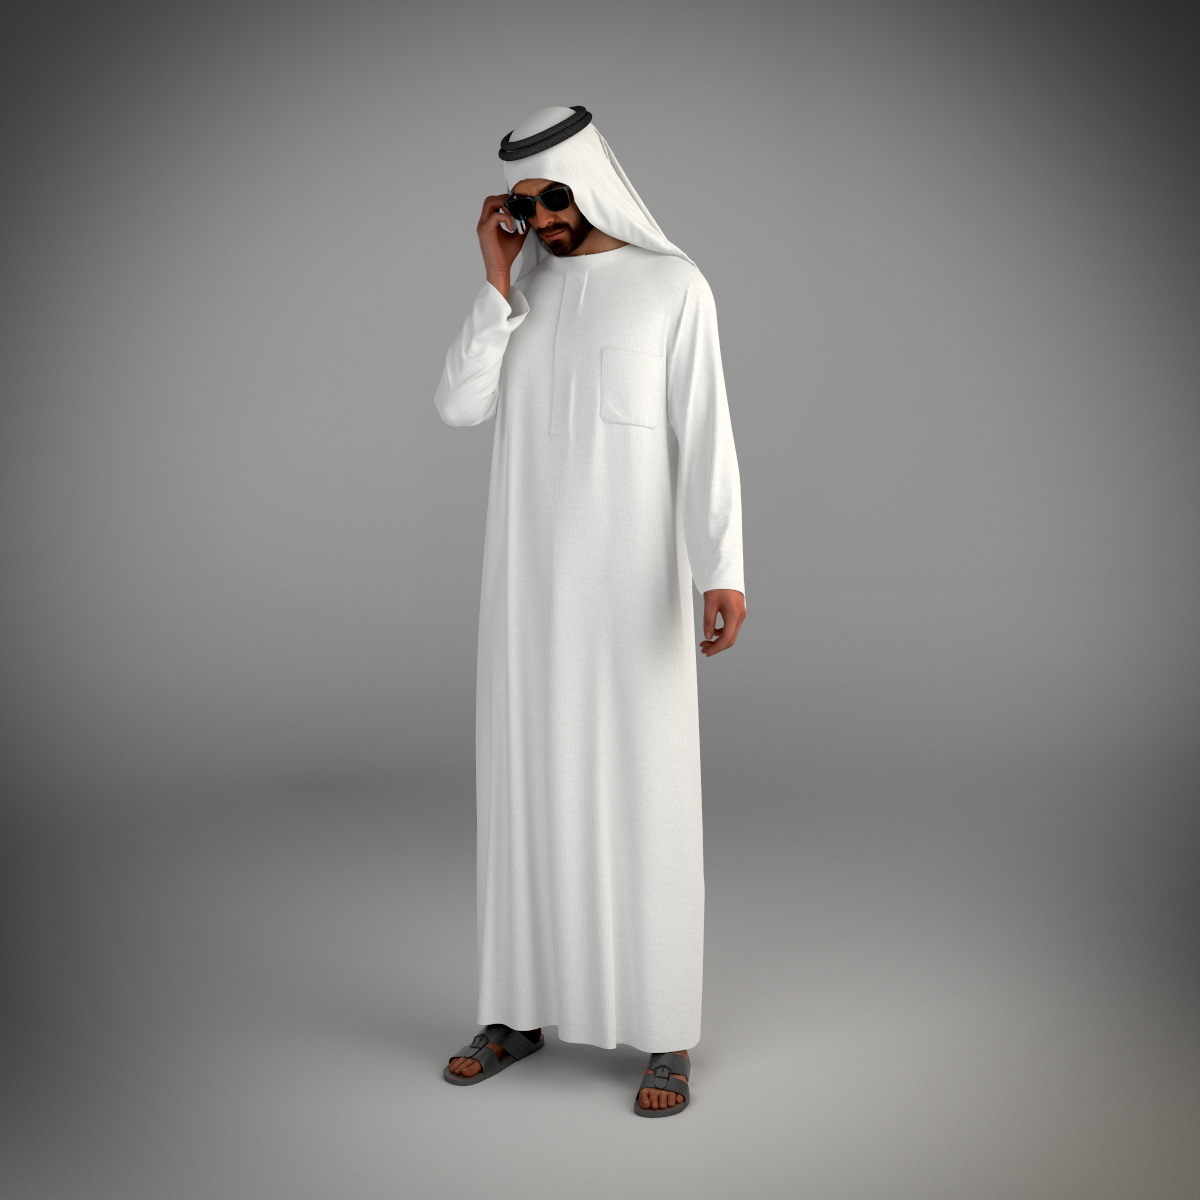 来自迪拜的传统阿拉伯男人构成3d模型